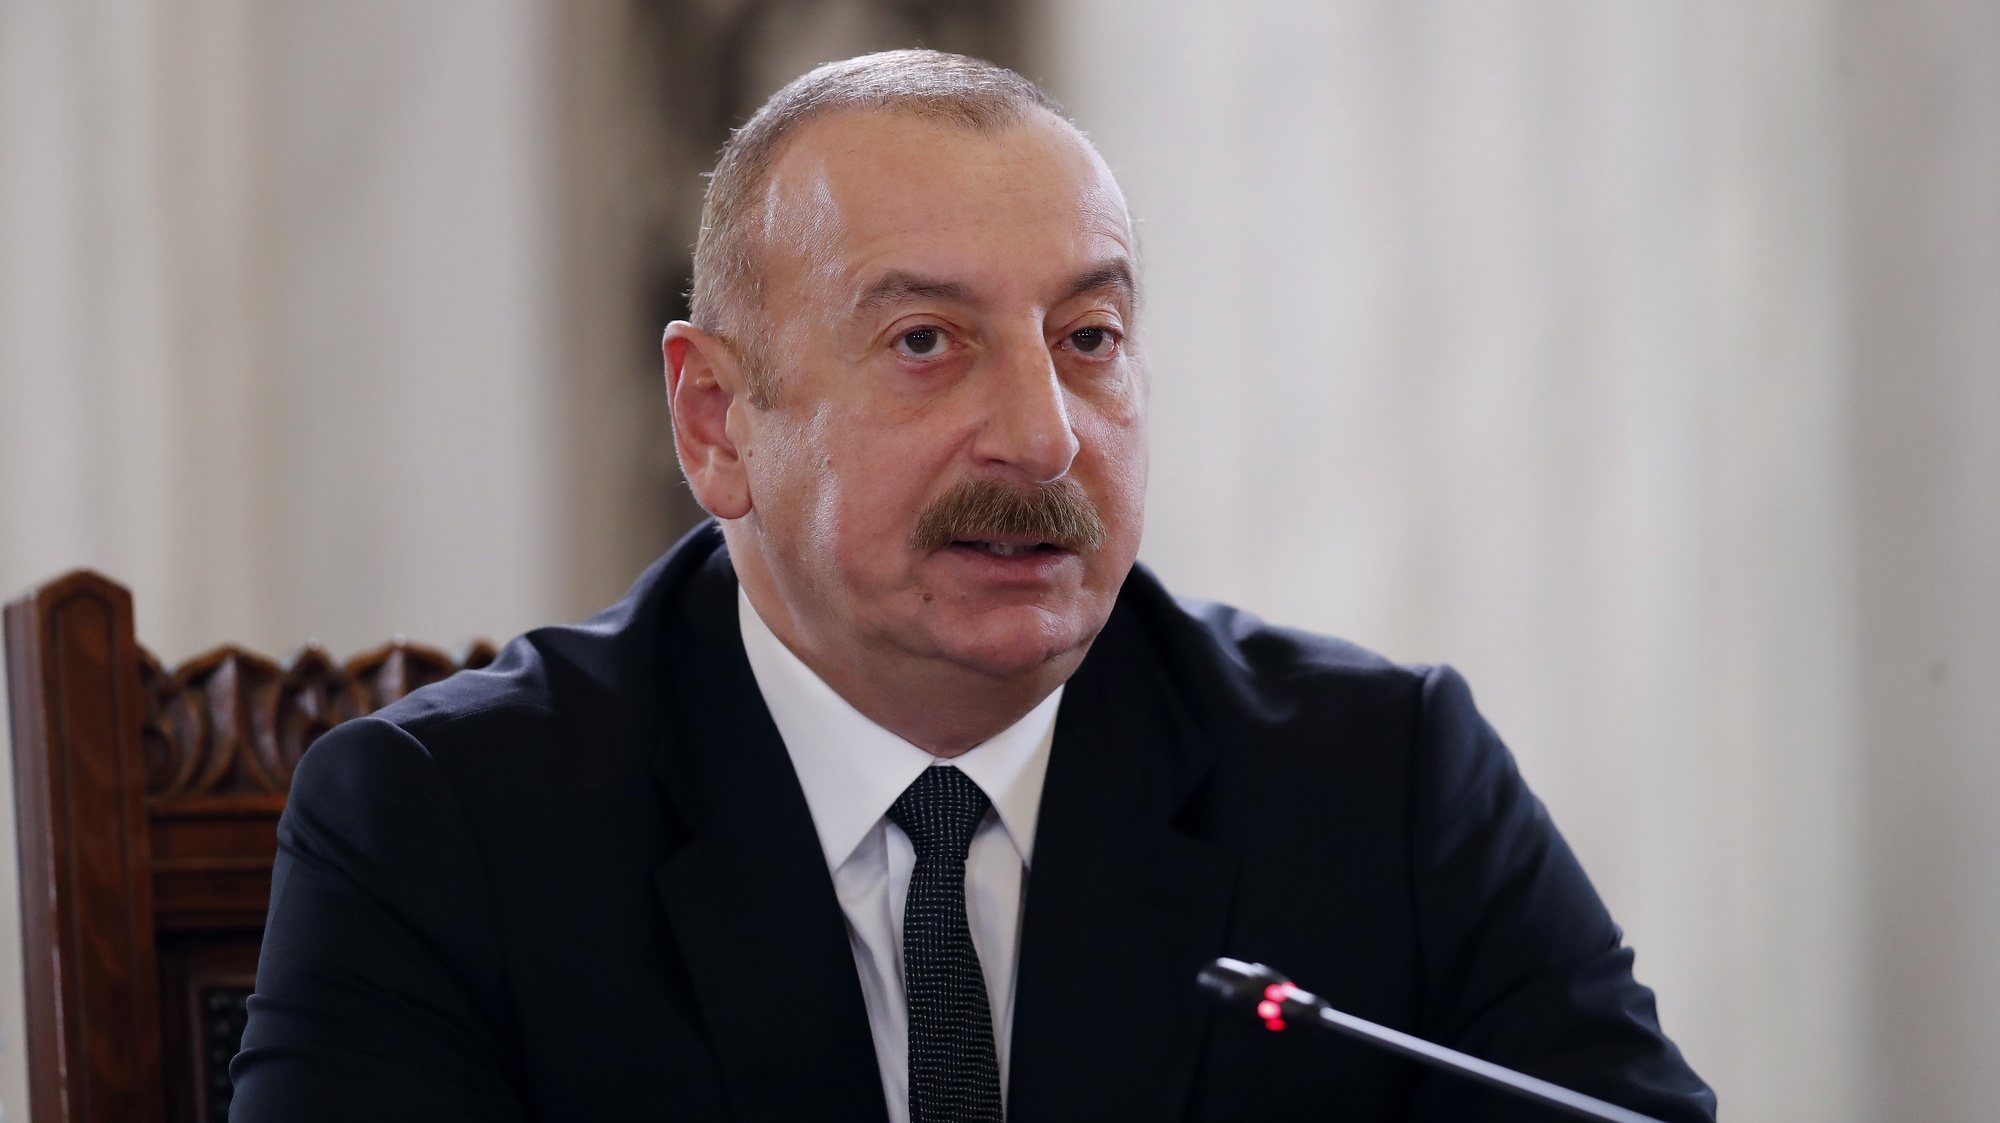 Nagorno-Karabakh: presidentes da Arménia e Azerbaijão com encontro marcado  para 5 de outubro - SIC Notícias